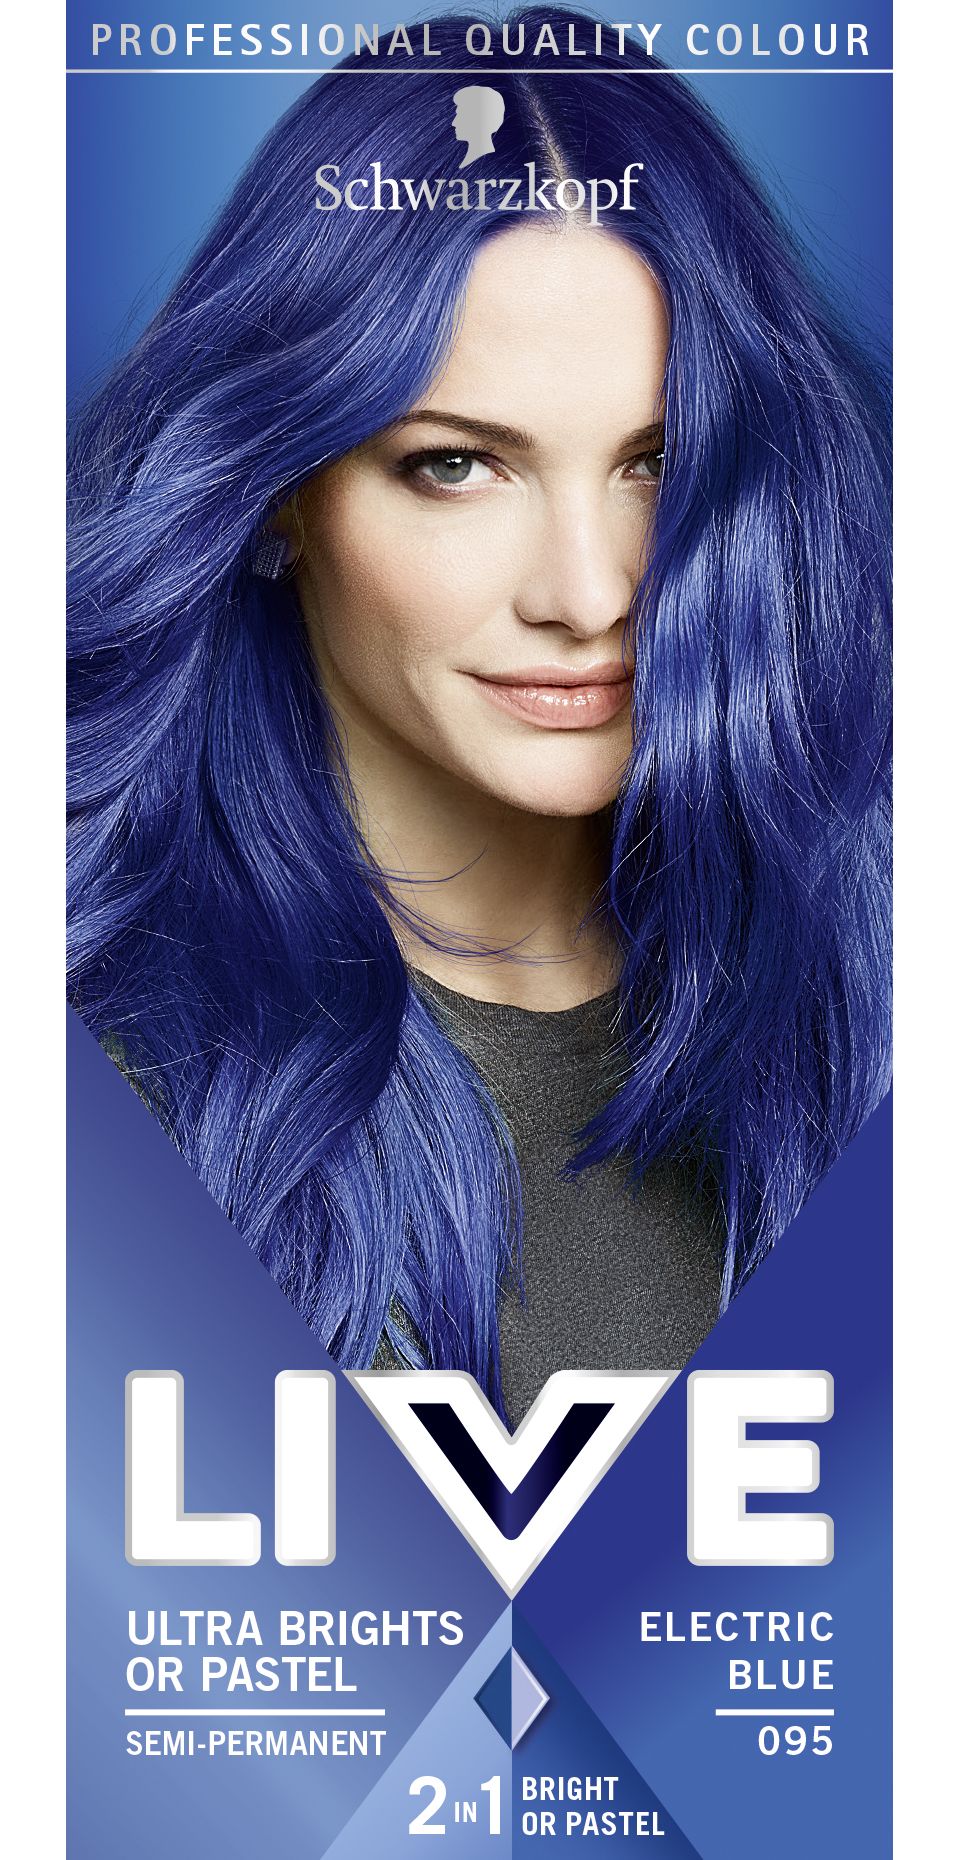 Schwarzkopf Schwarzkopf Live Electric Blue 095 Semi Permanent Hair Dye